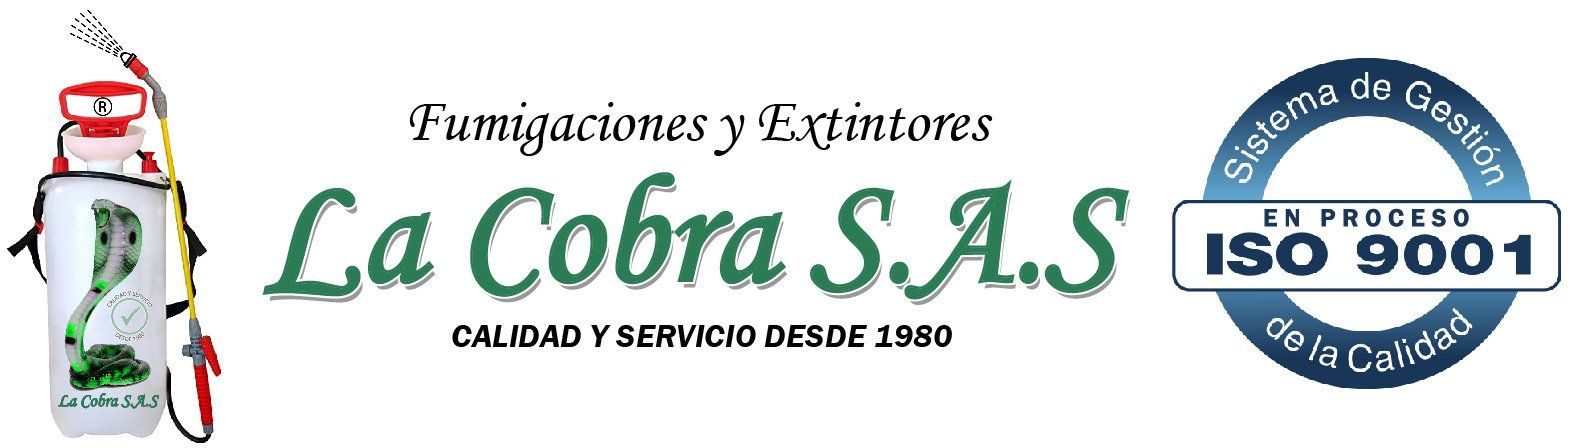 Logo fumigaciones y extintores la cobra